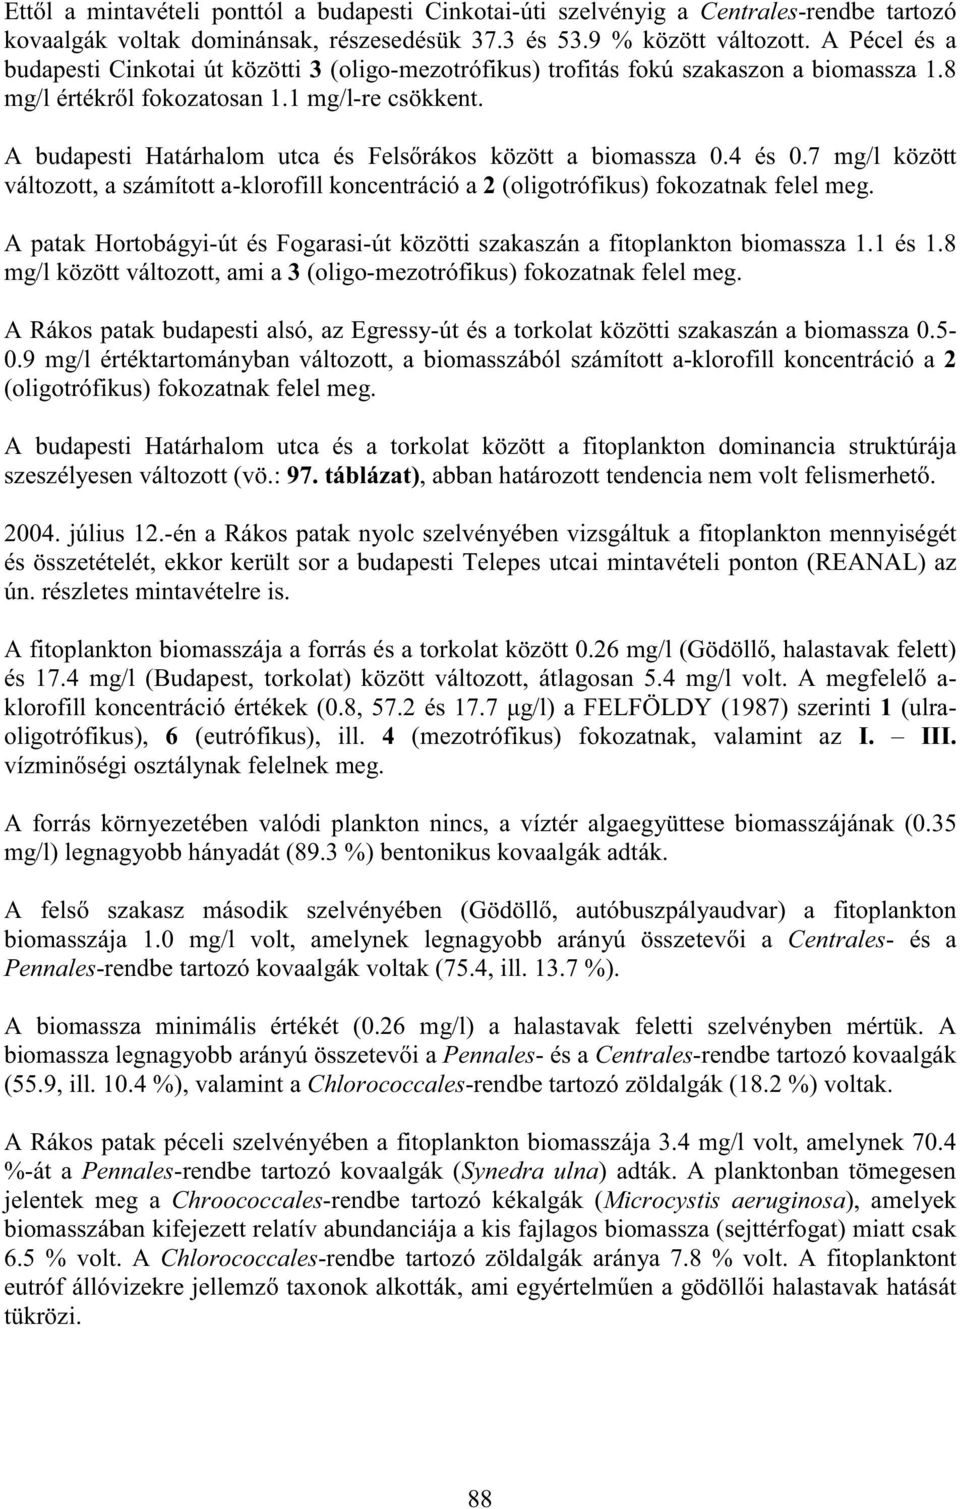 A budapesti Határhalom utca és Fels rákos között a biomassza 0.4 és 0.7 mg/l között változott, a számított a-klorofill koncentráció a 2 (oligotrófikus) fokozatnak felel meg.